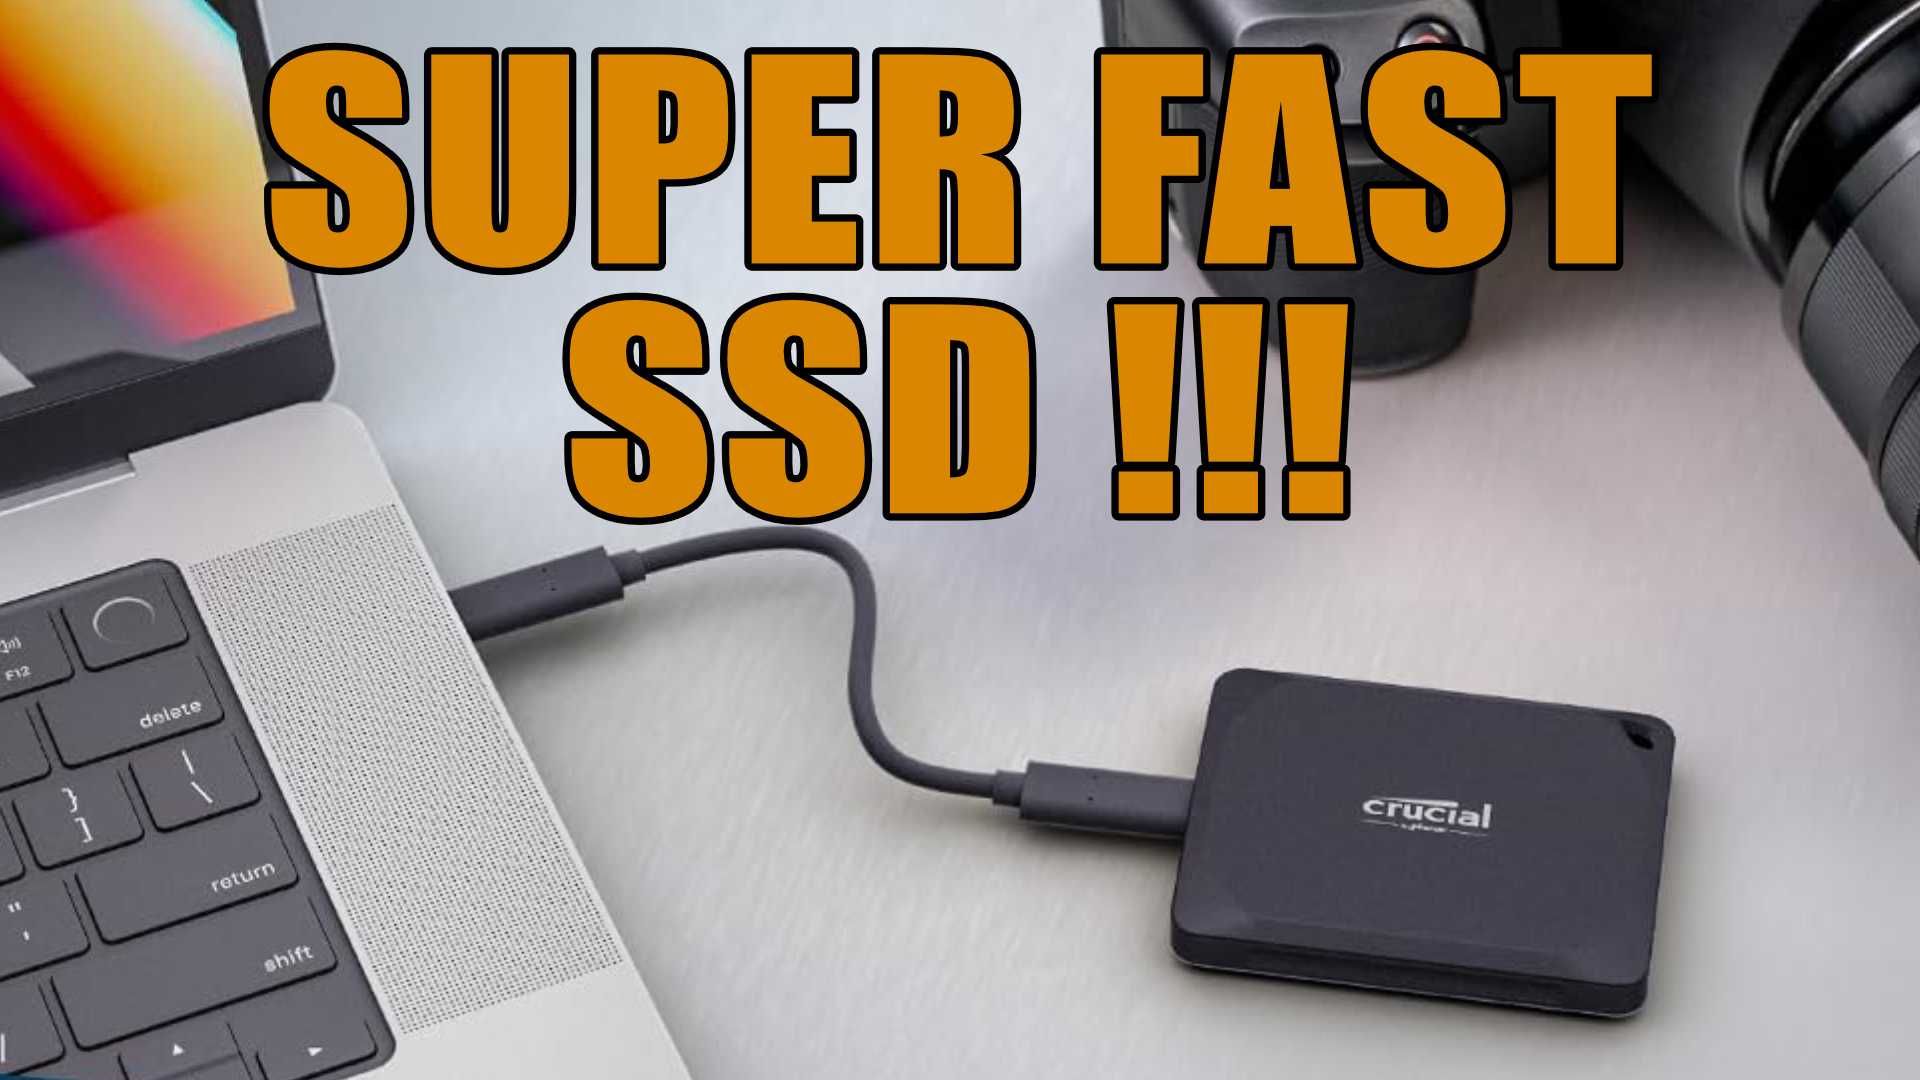 SSD extern CRUCIAL X9 1TB USB-C 3.2 Sigilat in cutie 1050MB/s